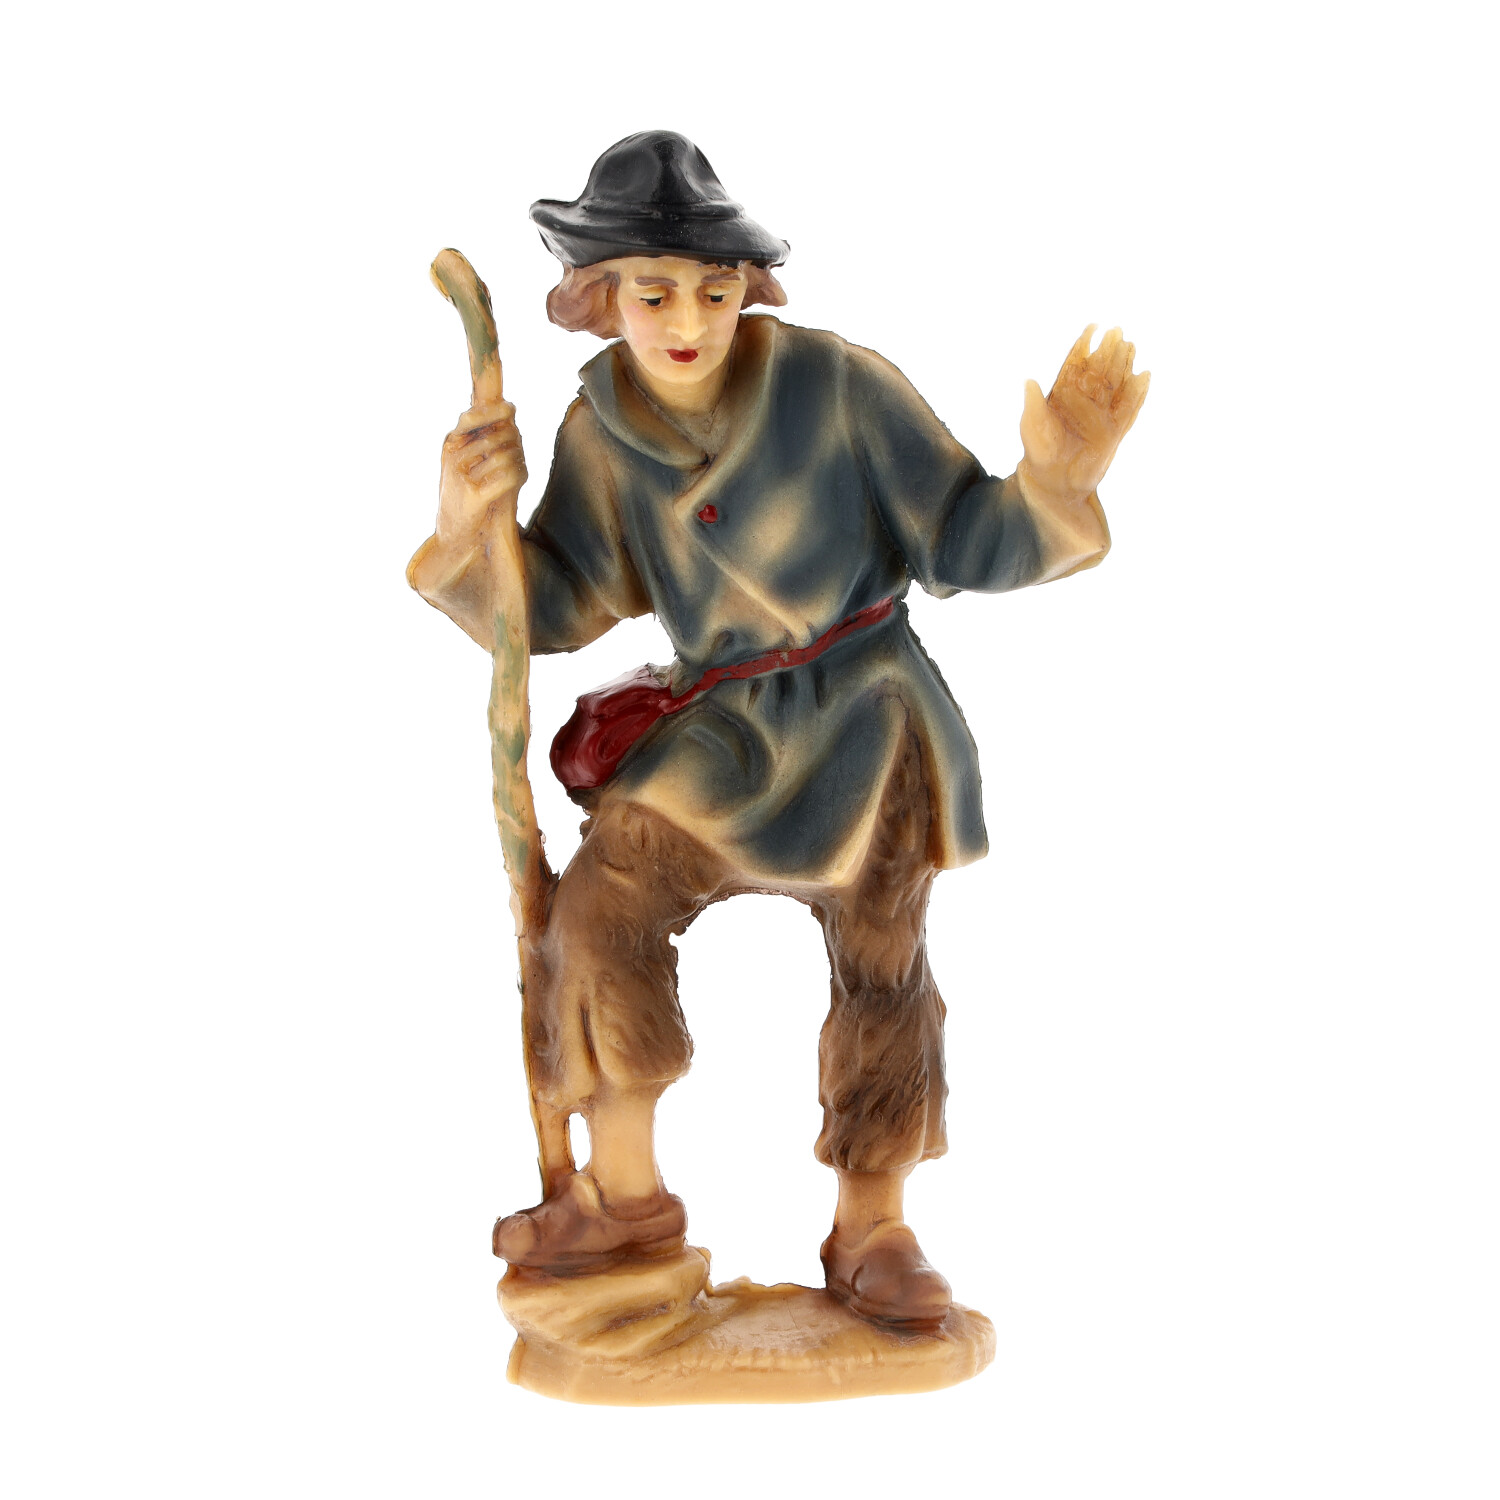 Shepherd - Marolin resin Nativity figure - made in Germany